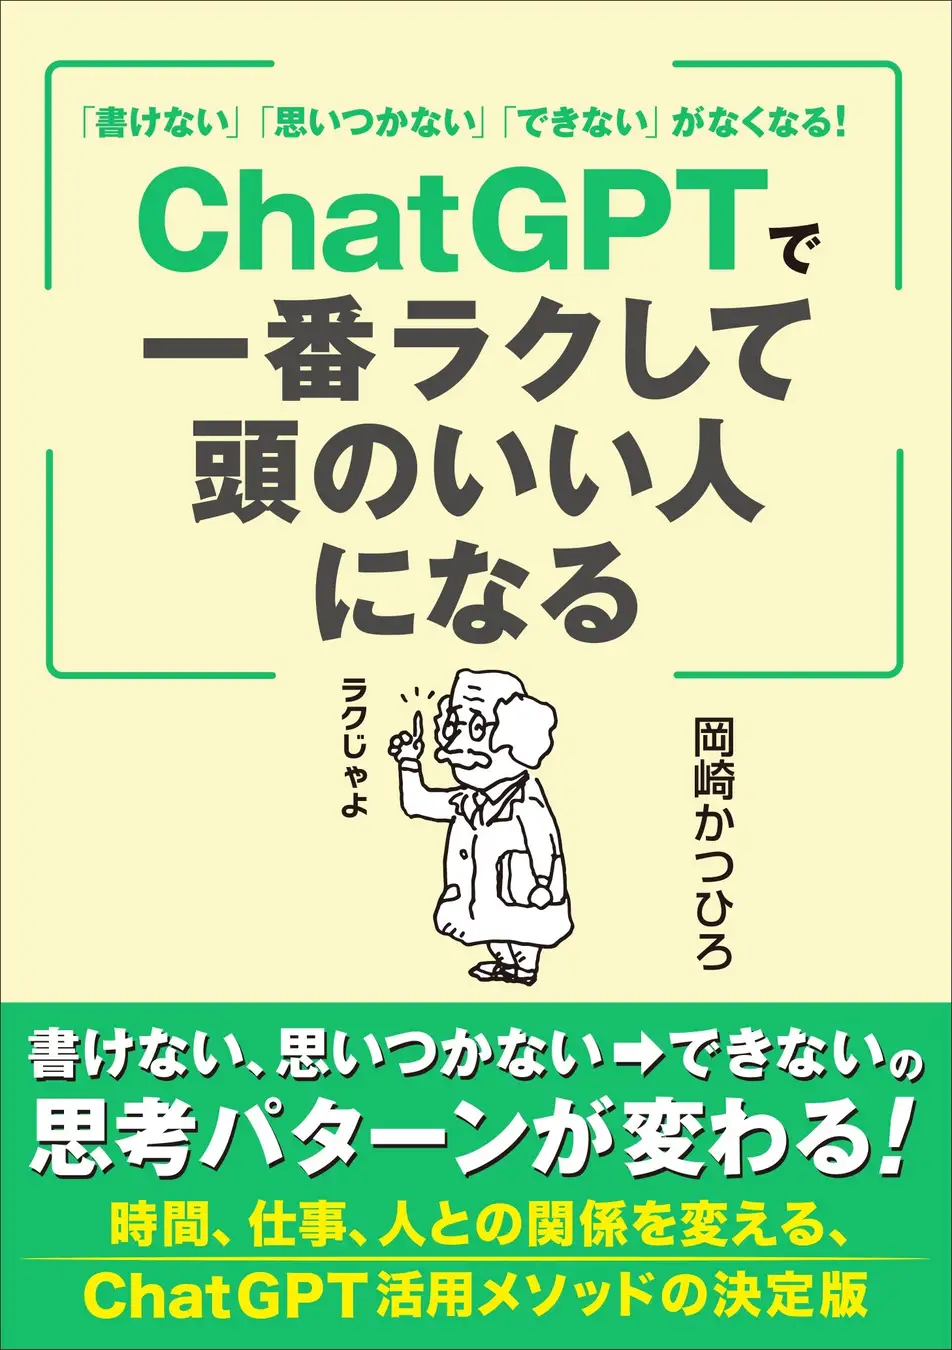 ChatGPTを活用して効率的に学習する方法